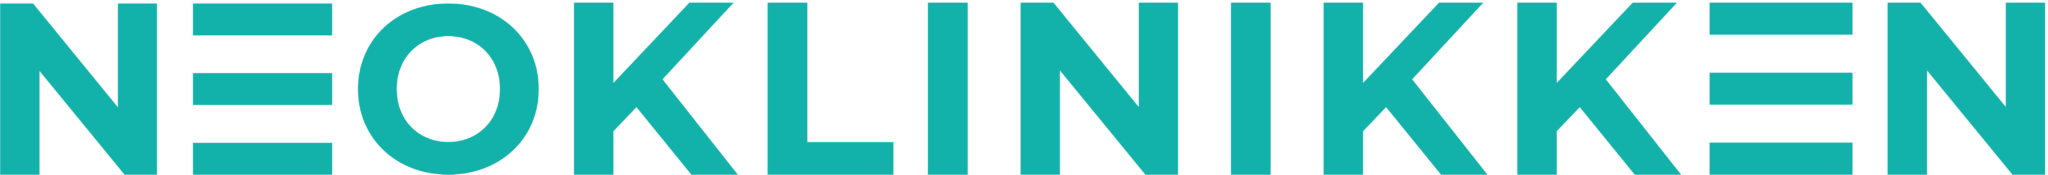 Neoklinikken logo slankeoperasjon uten arr